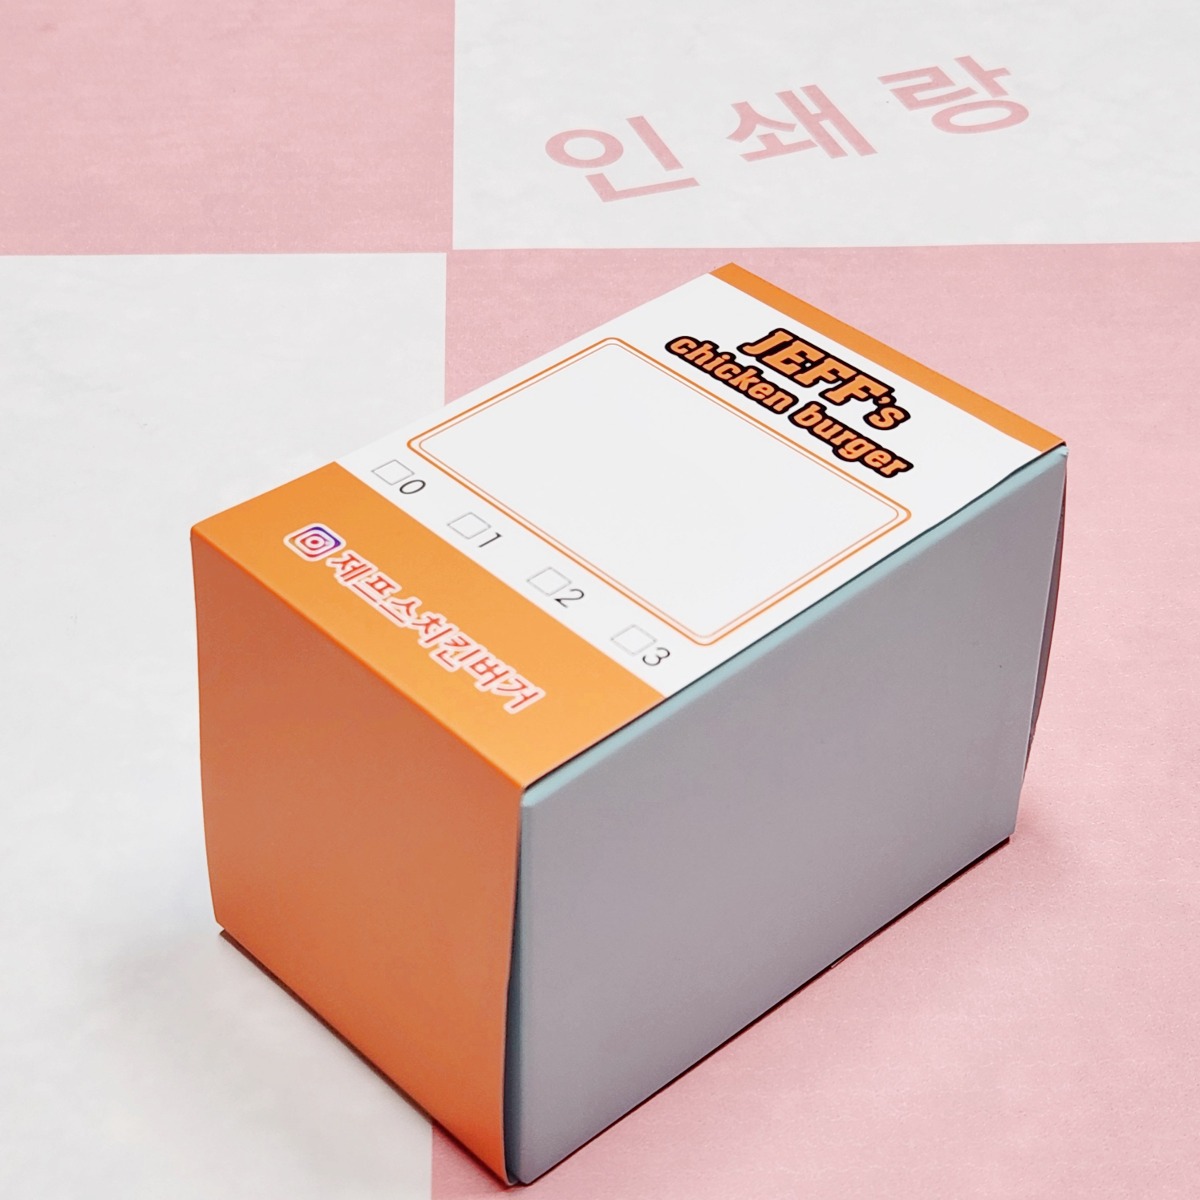 햄버거 띠지 제작 인스턴트 식품 포장 슬리브띠지 샌드위치 박스 종이띠지 소량 인쇄 618